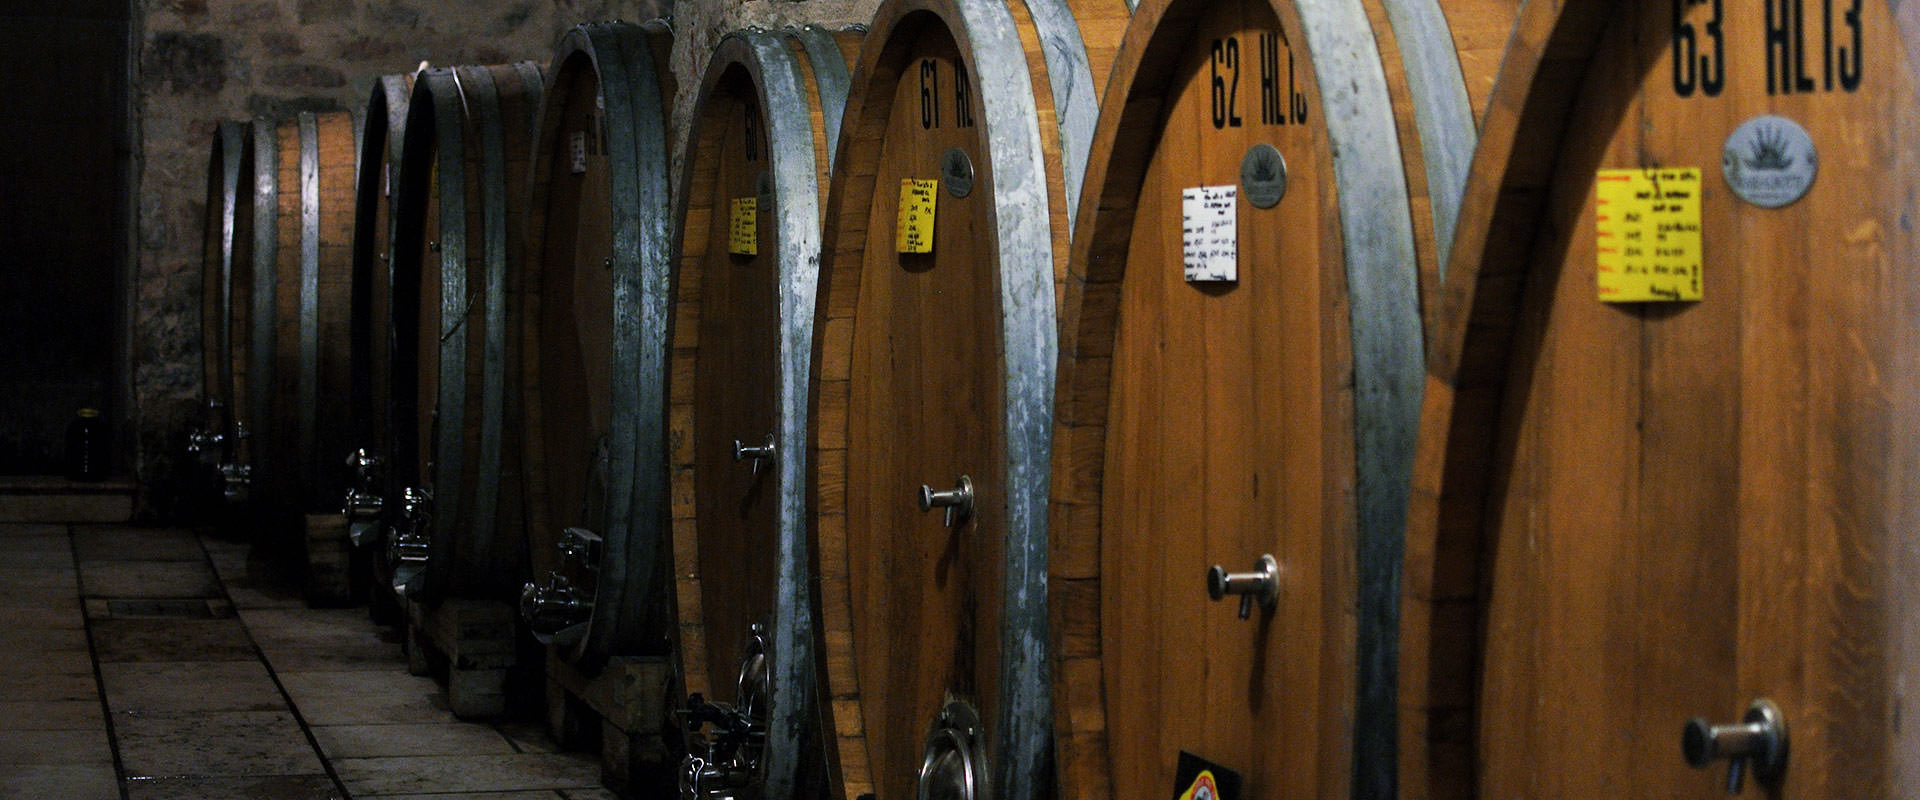 Im herzen der Valpolicella Classica seit 1948 produzieren wir qualitätweine